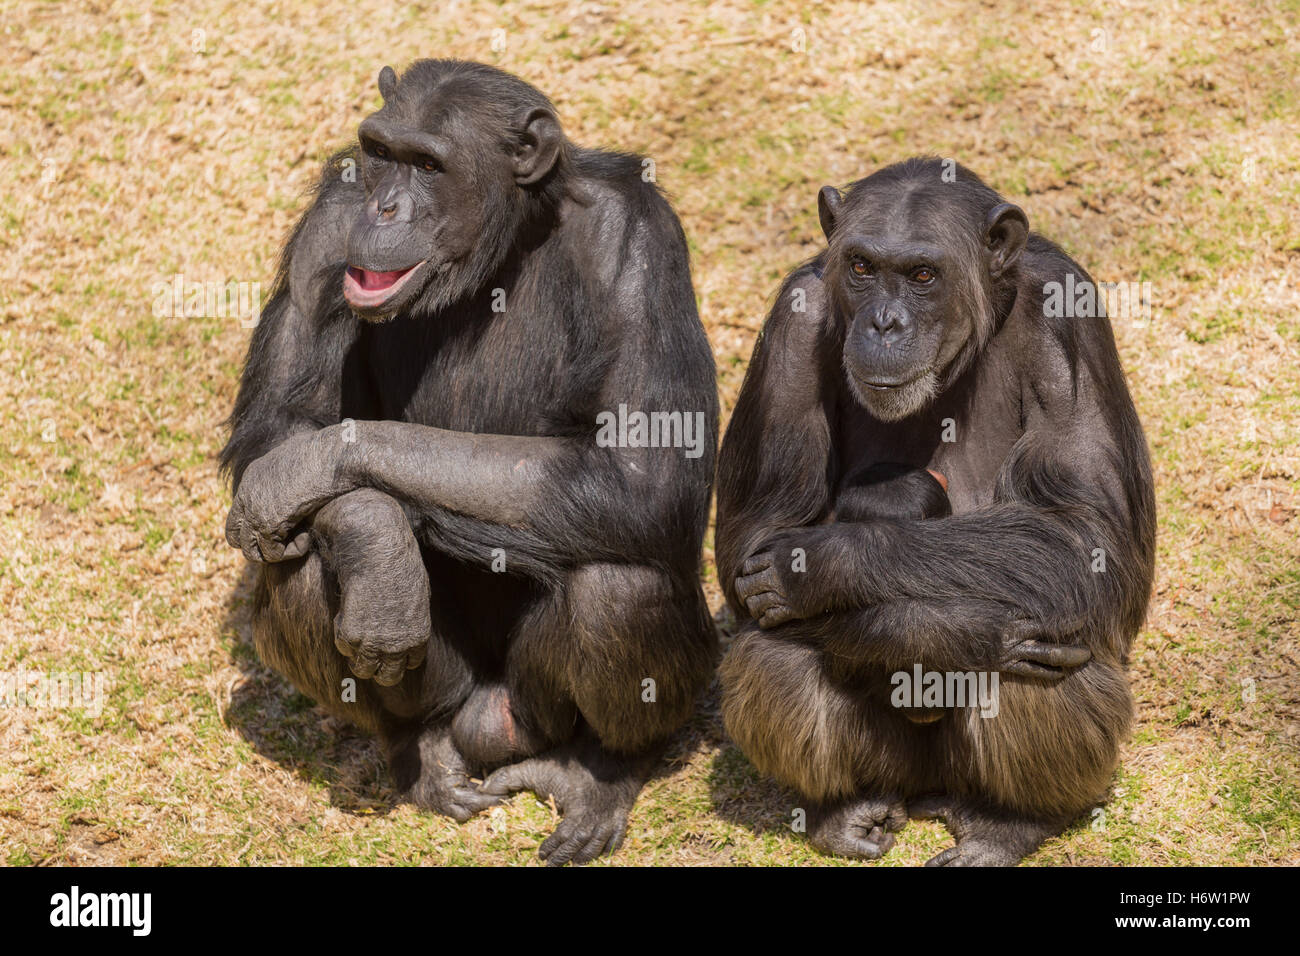 Tier Afrika Wildlife Safari Tier Säugetier schwarze wilde Affen dunkelhäutigen kohlschwarze tiefschwarze Tierwelt Schimpansen Natur Affe Schimpanse Stockfoto